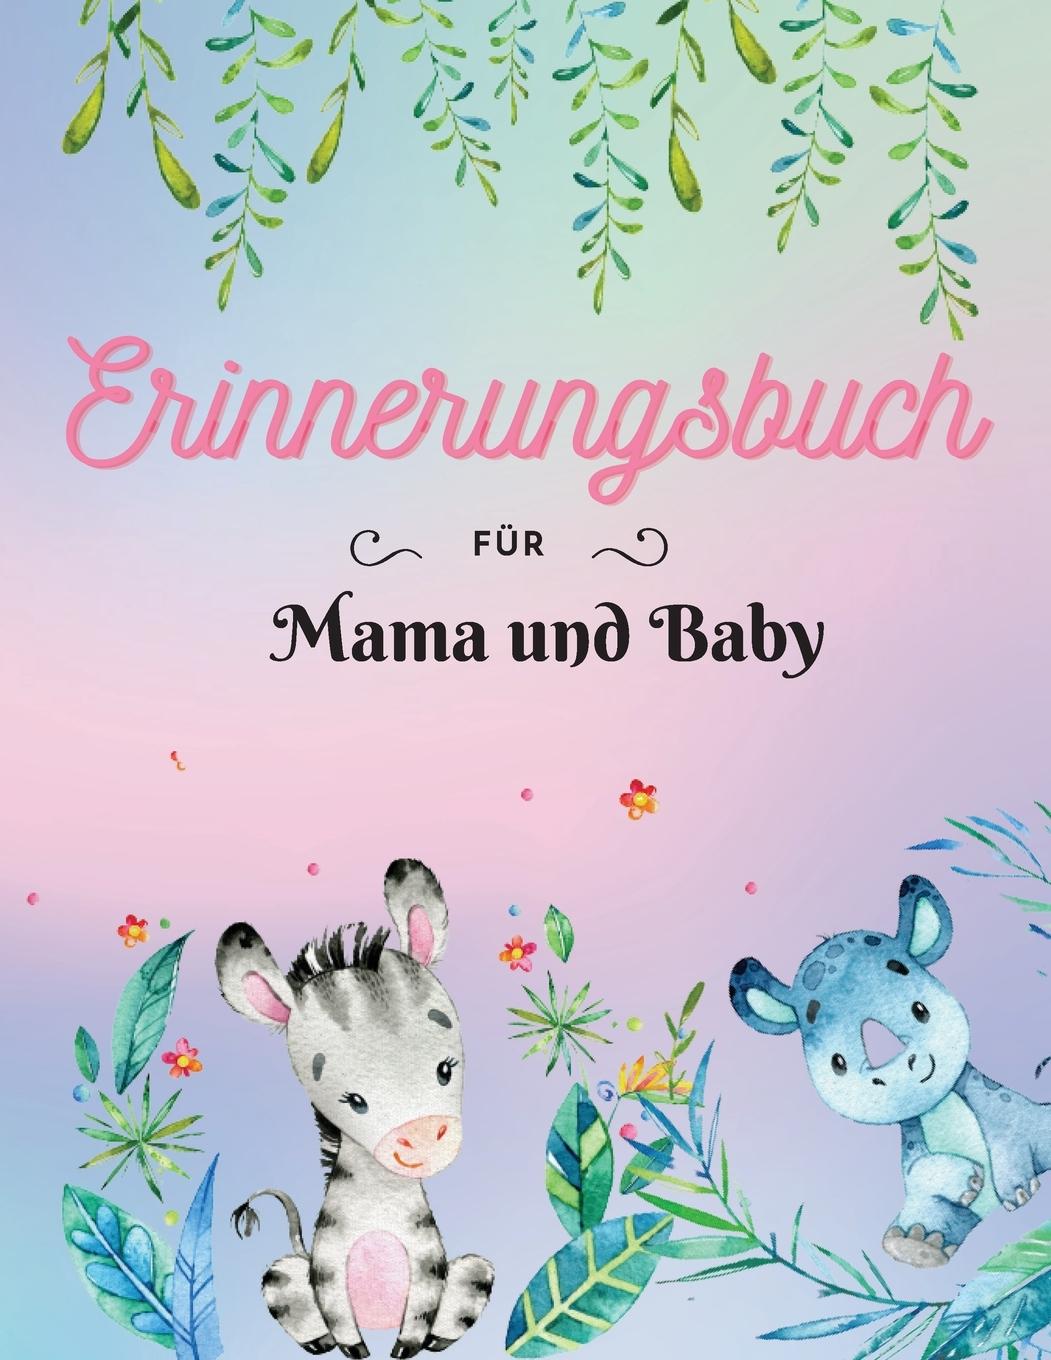 Carte Erinnerungsbuch fur Mama und Baby 